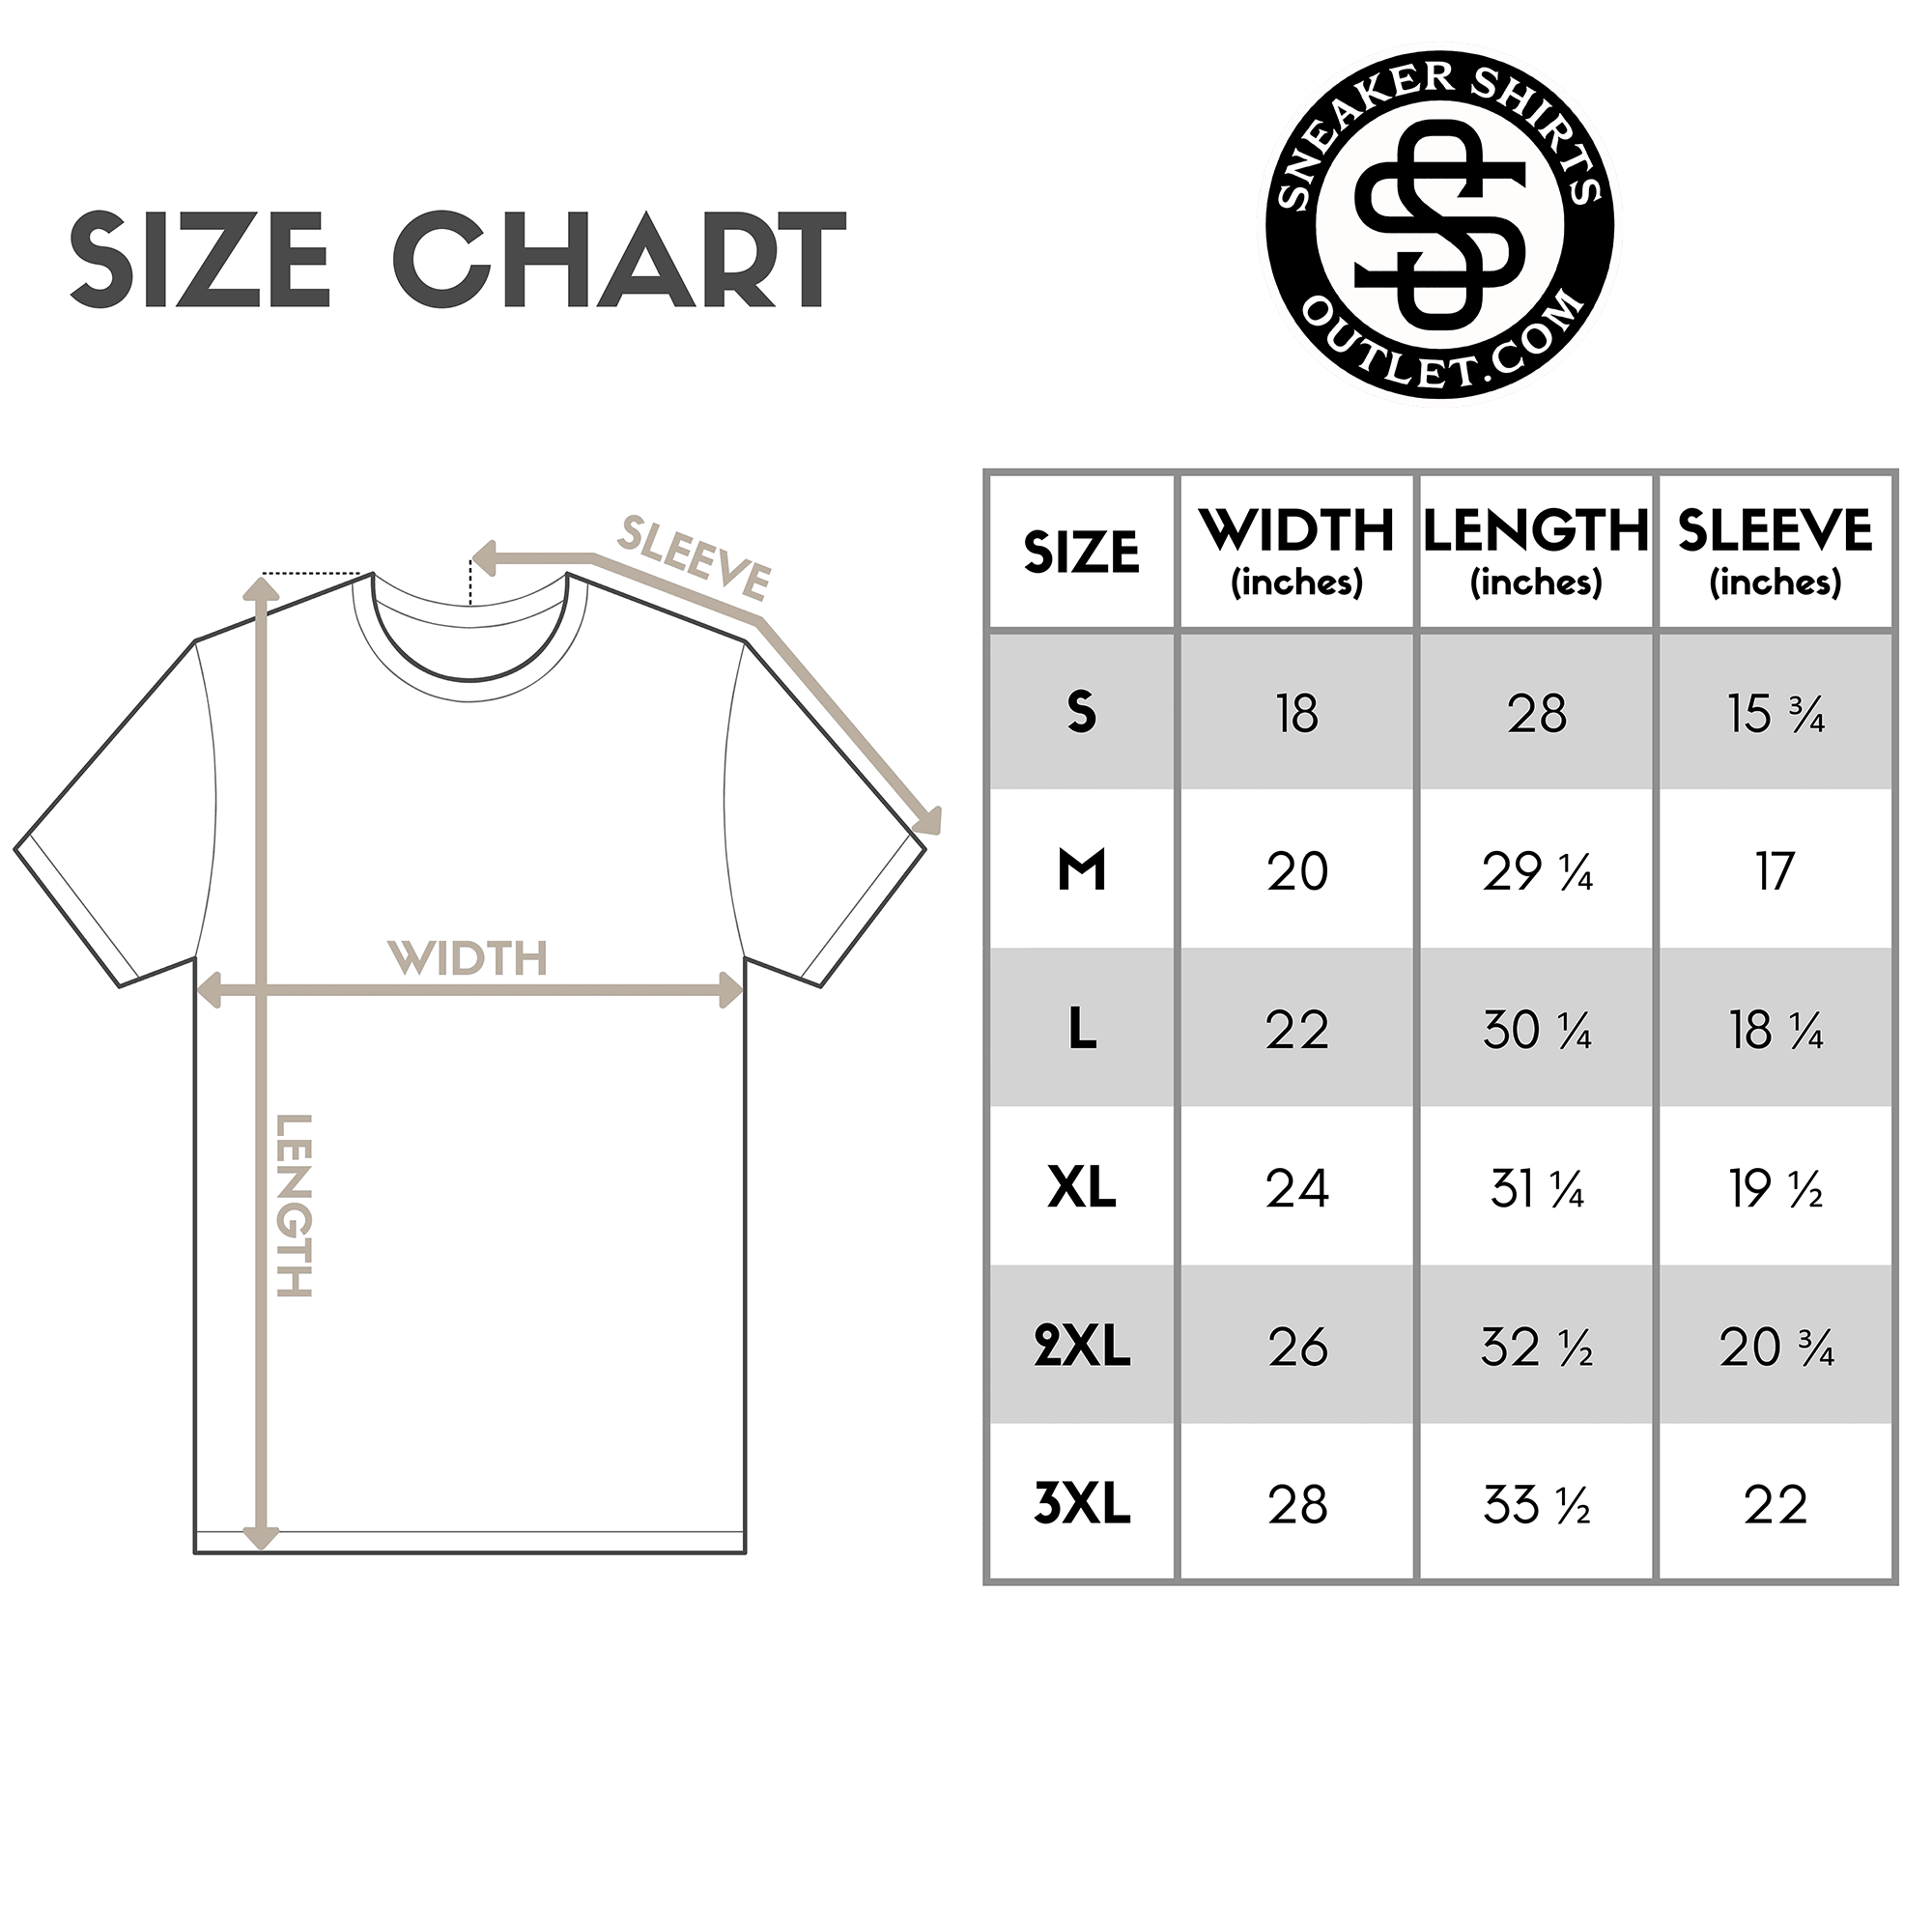 Queen Sneaker Shirt size chart photo